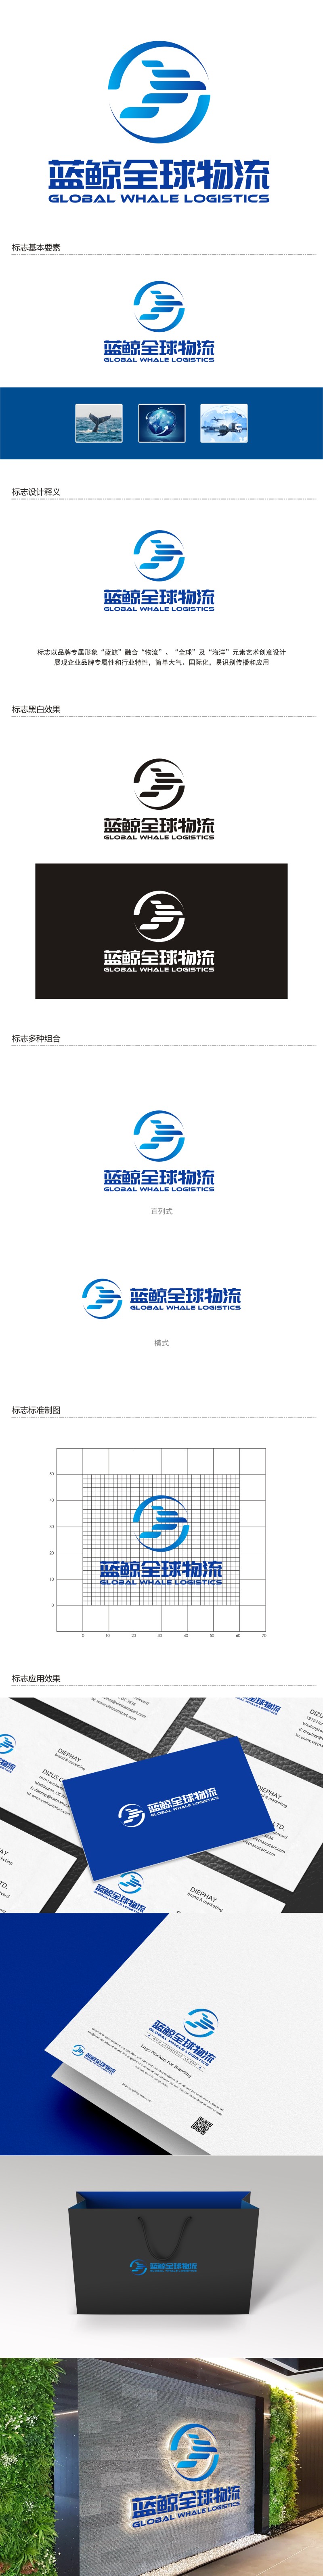 陈国伟的蓝鲸全球物流（广州）有限公司logo设计